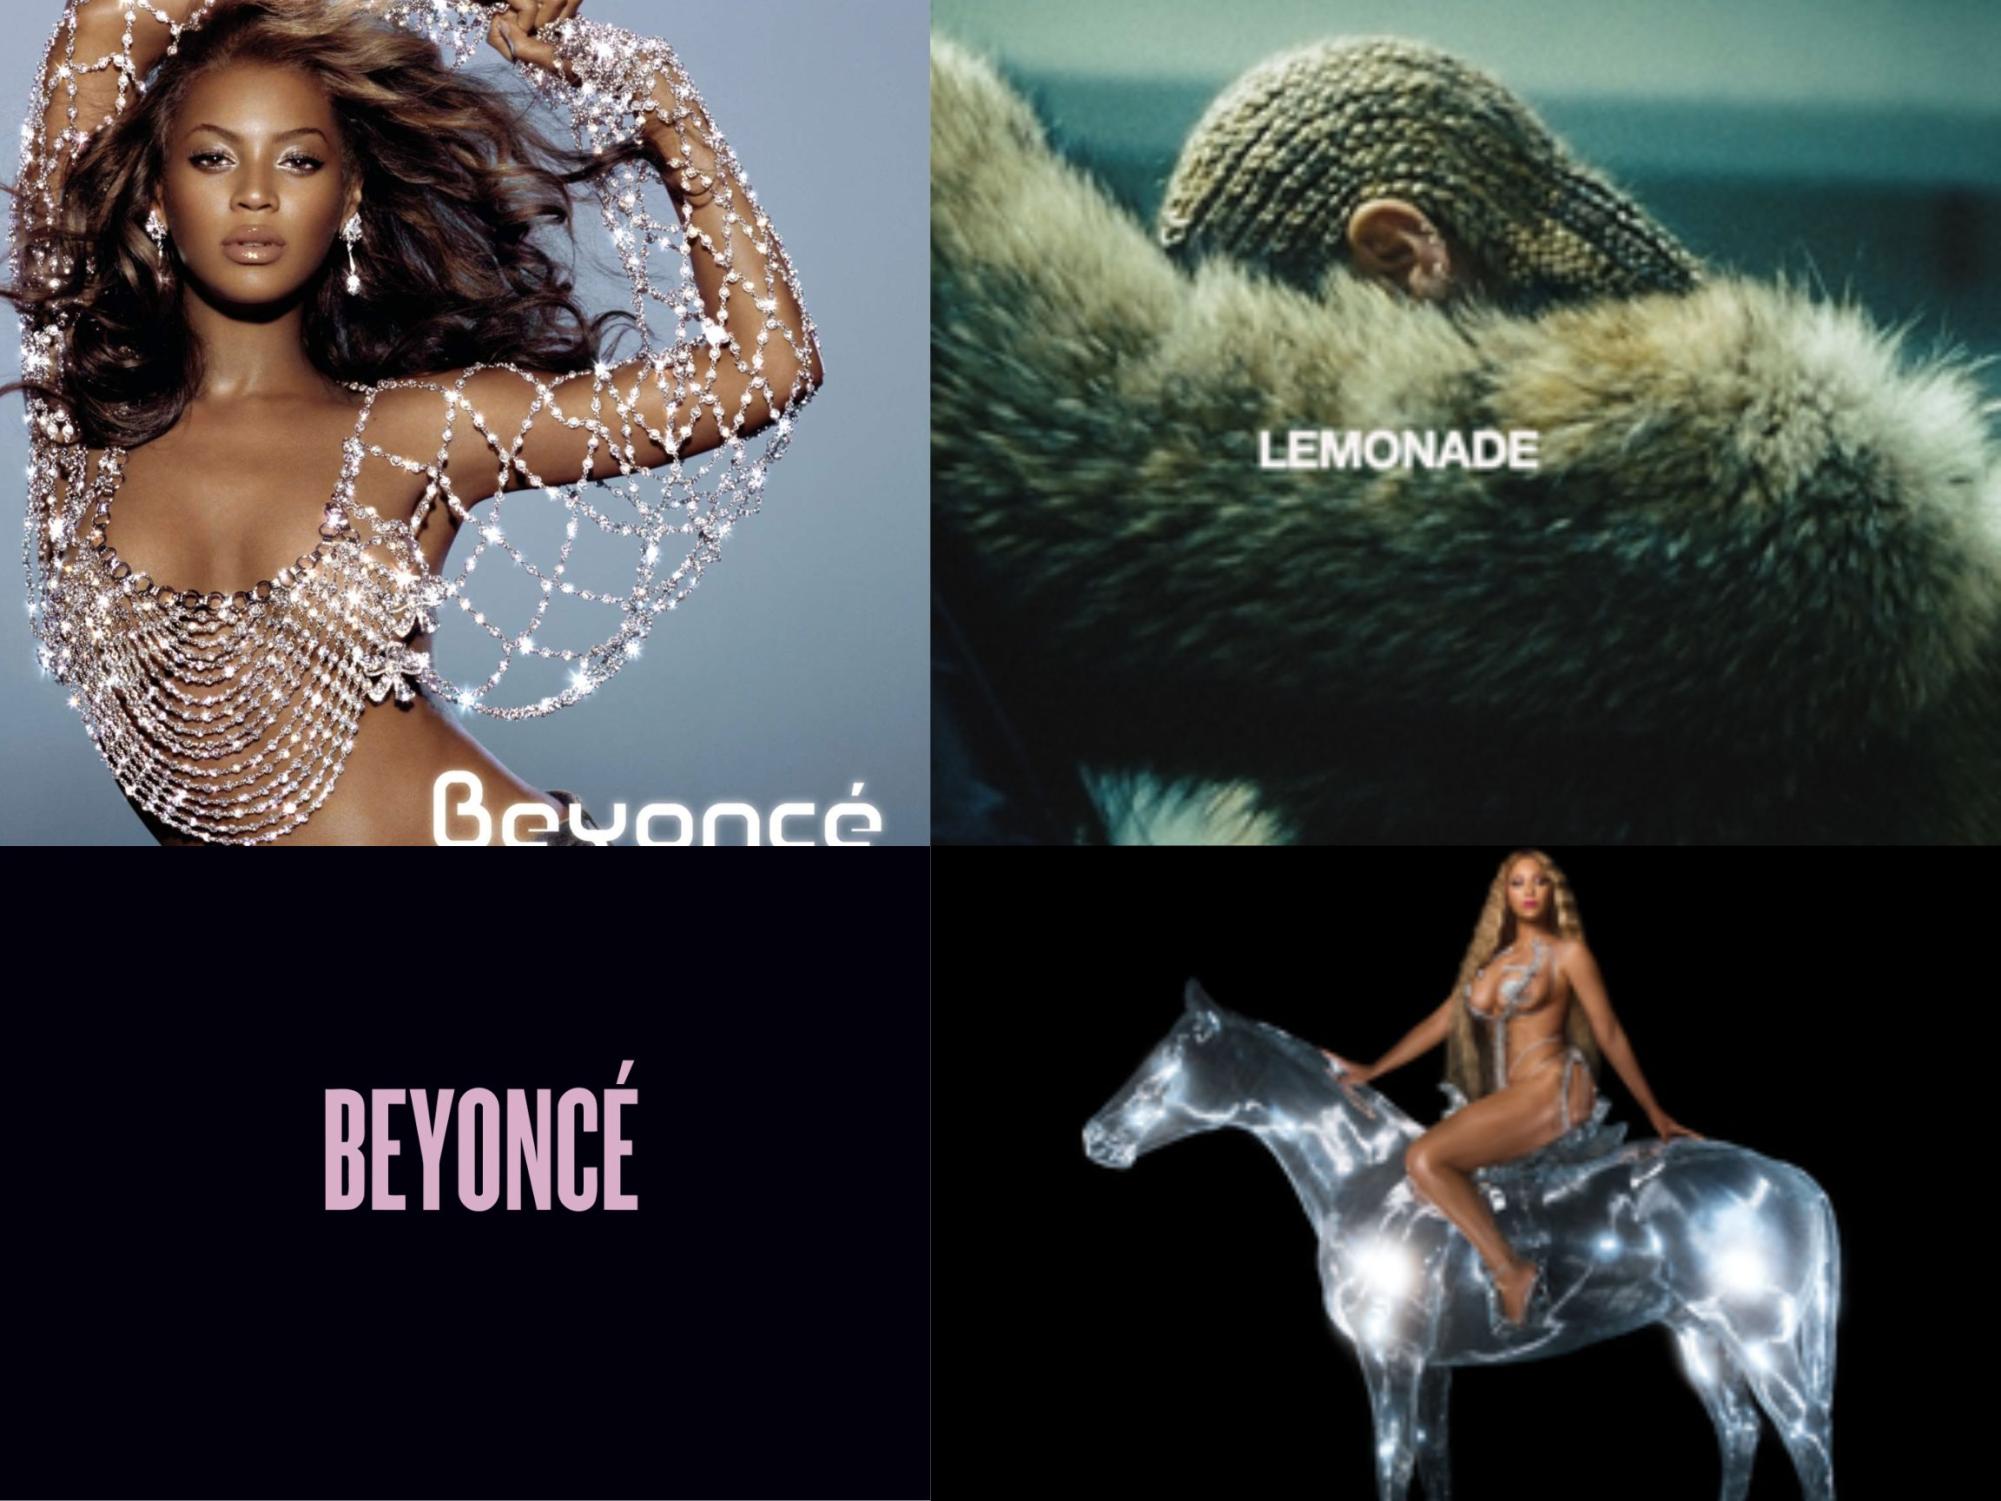 Four of Beyoncés studio albums, including her newest album, Renaissance